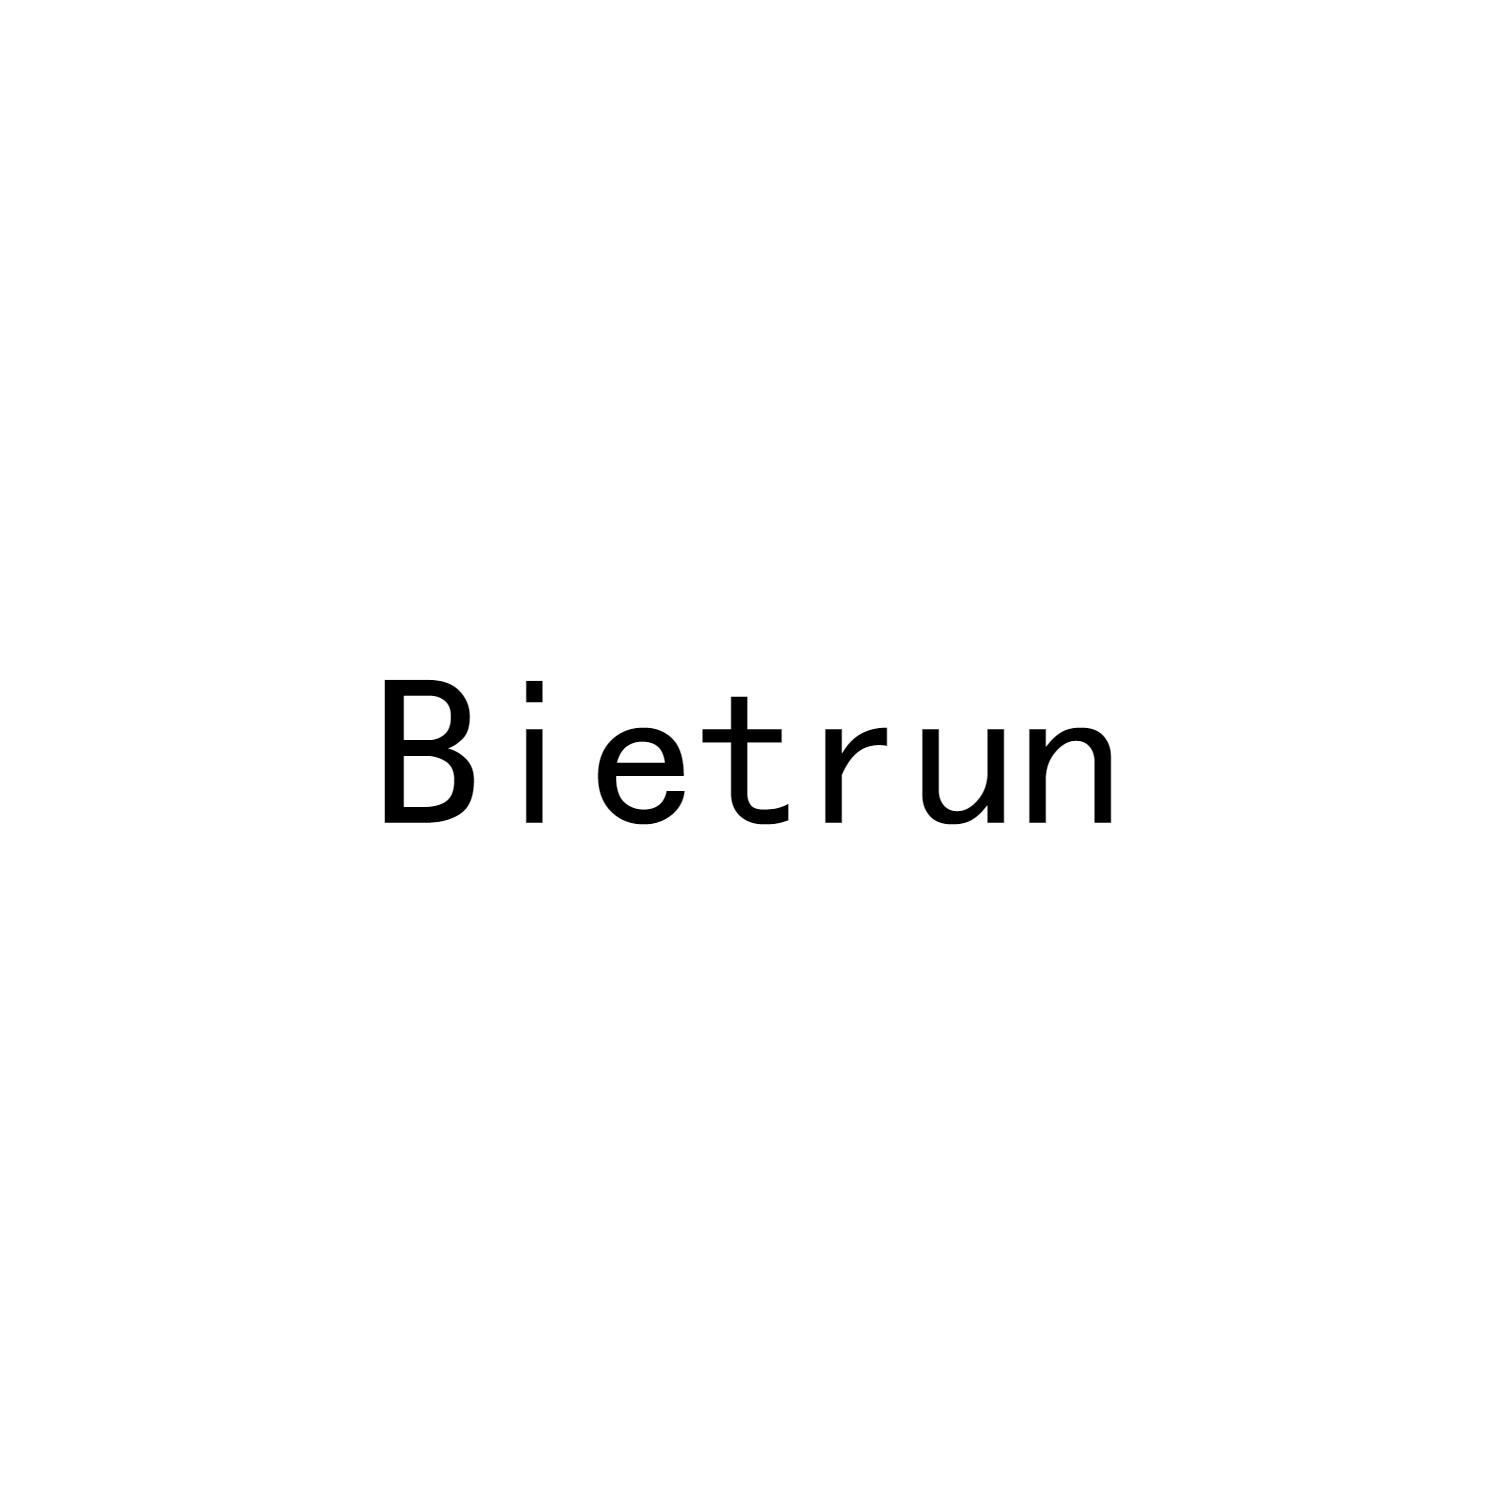 BIETRUN